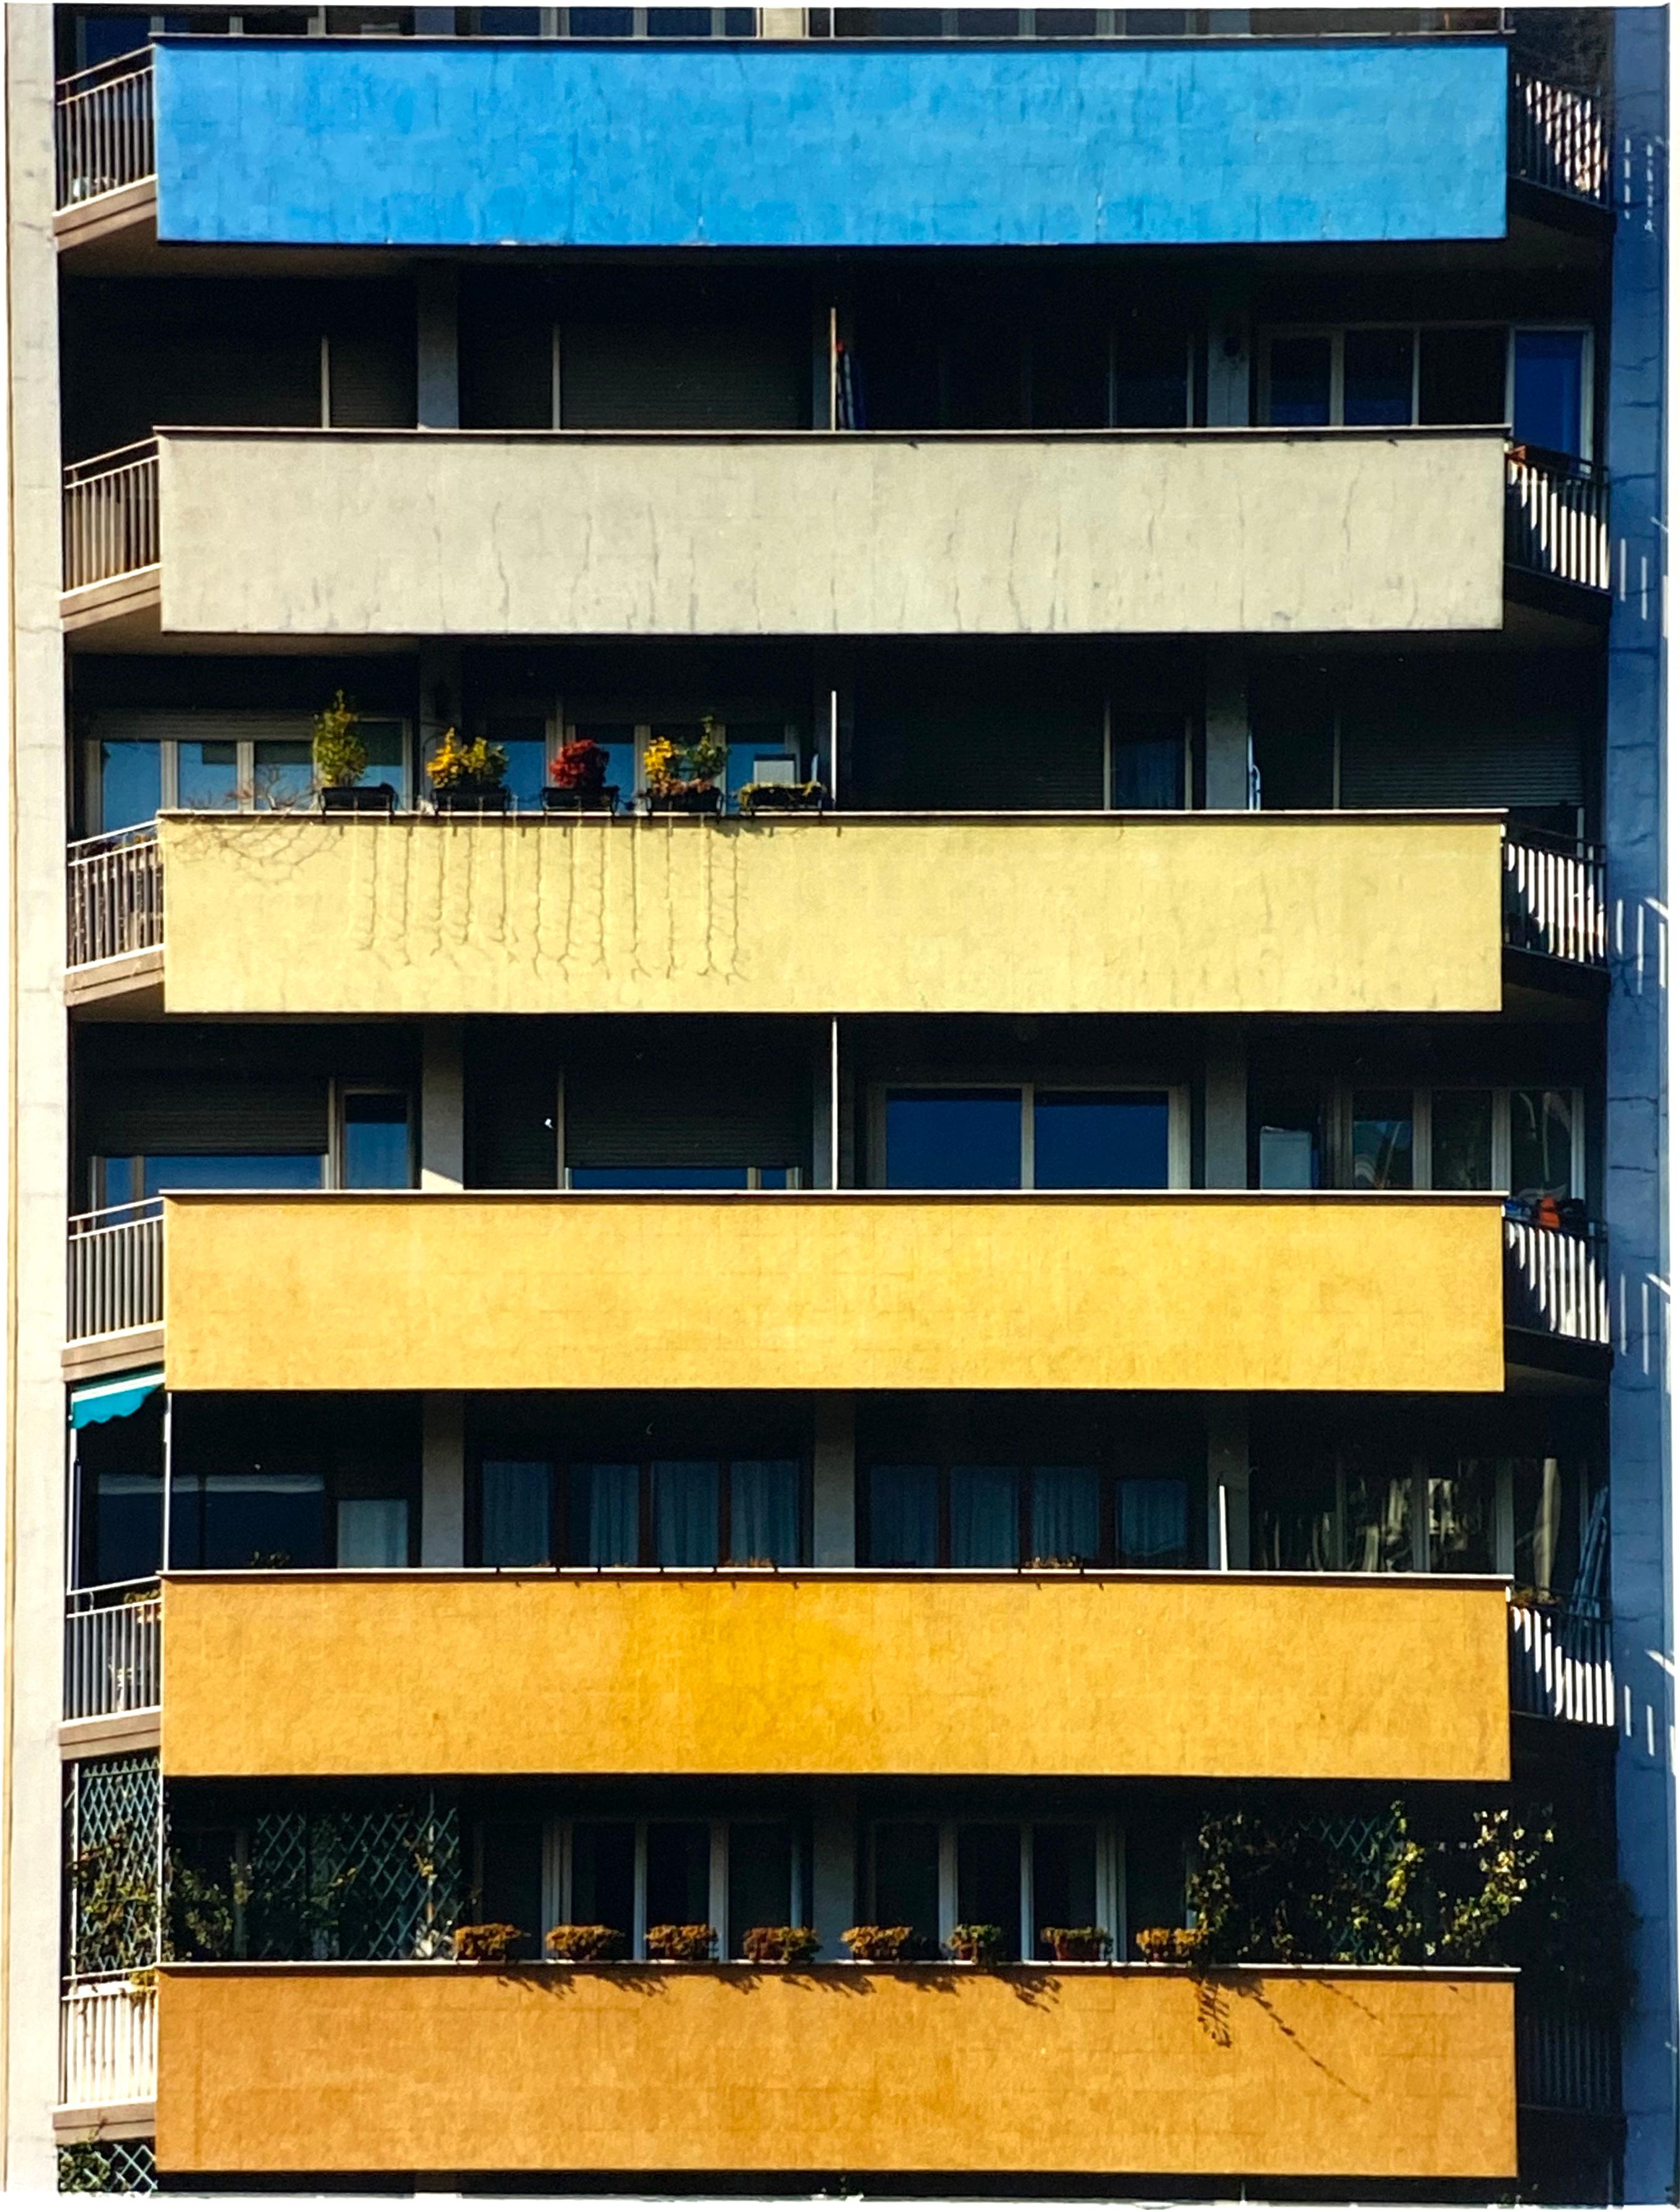 Rainbow Apartments, Mailand - Konzeptionelle architektonische Farbfotografie